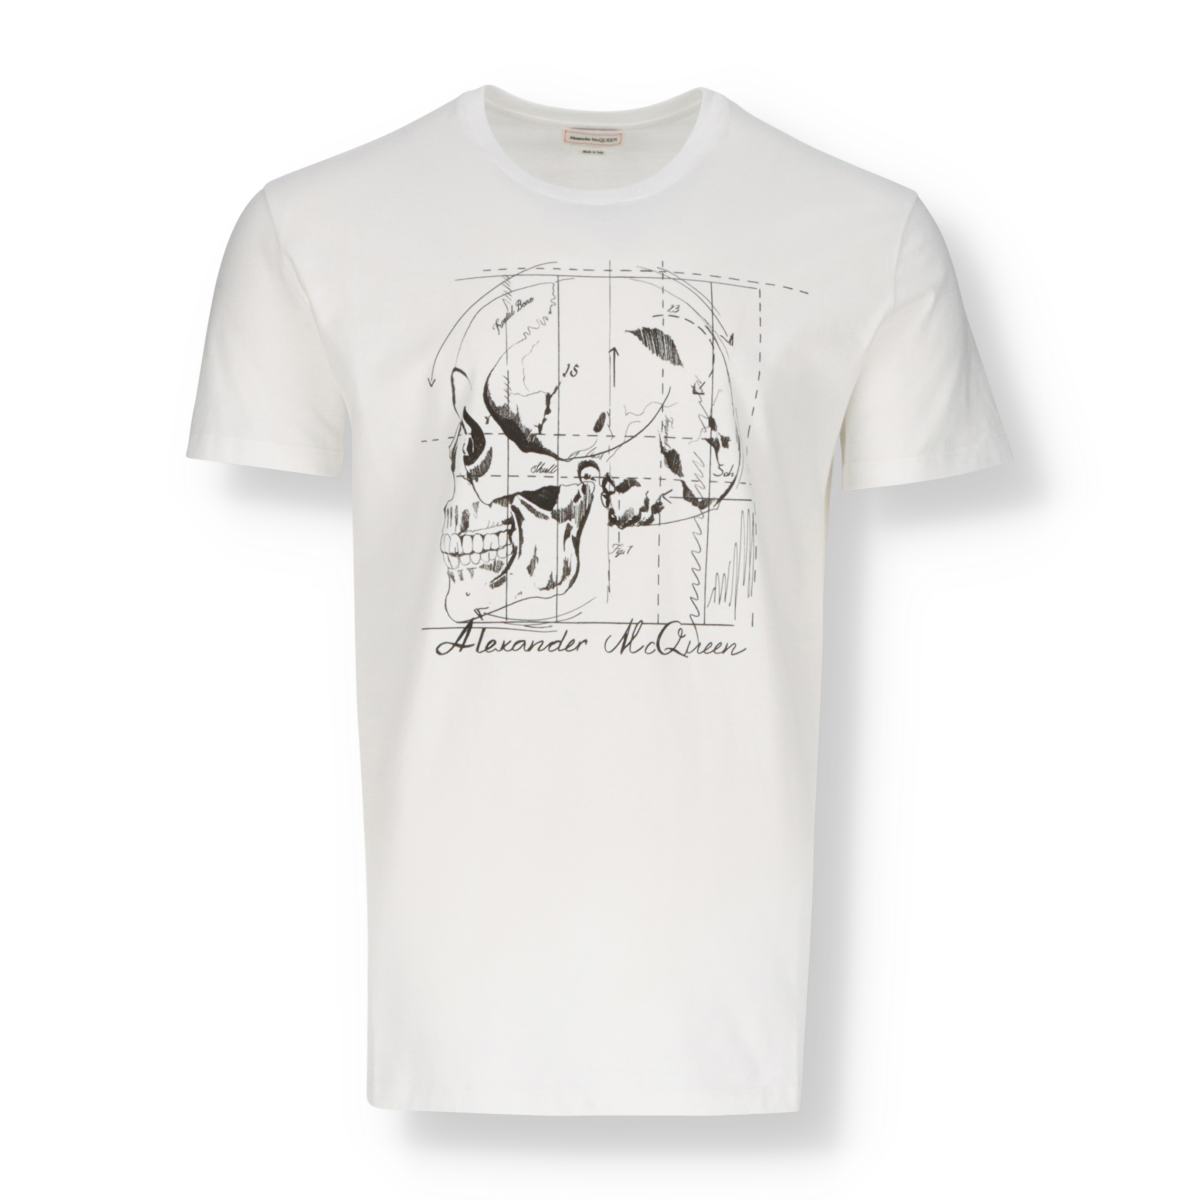 Alexander McQueen t-shirt design